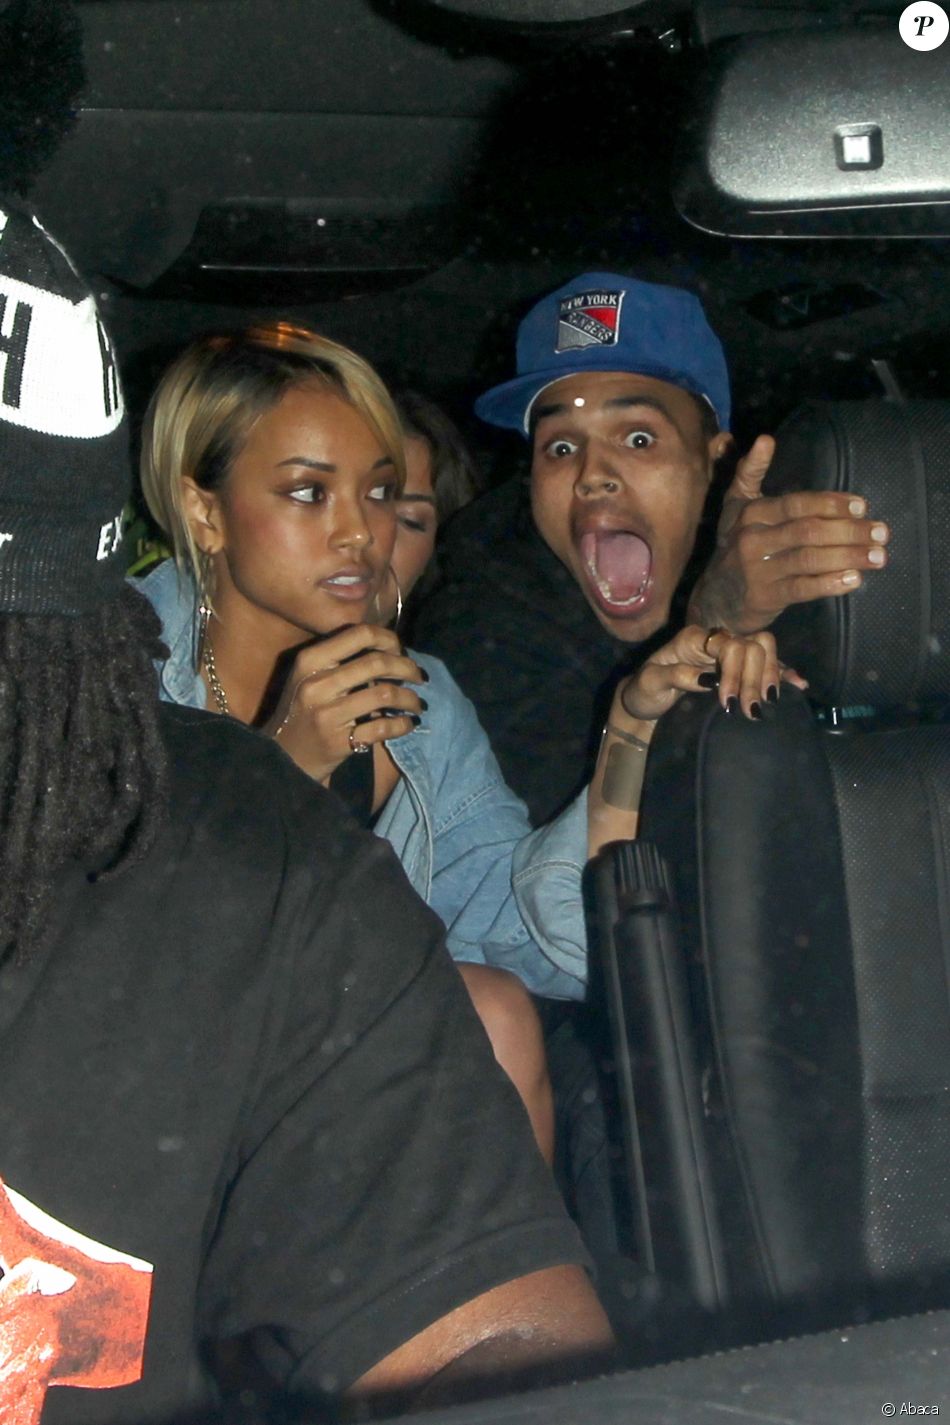 karrueche rencontres Chris Brown sortir avec quelqu’un de votre classe sociale